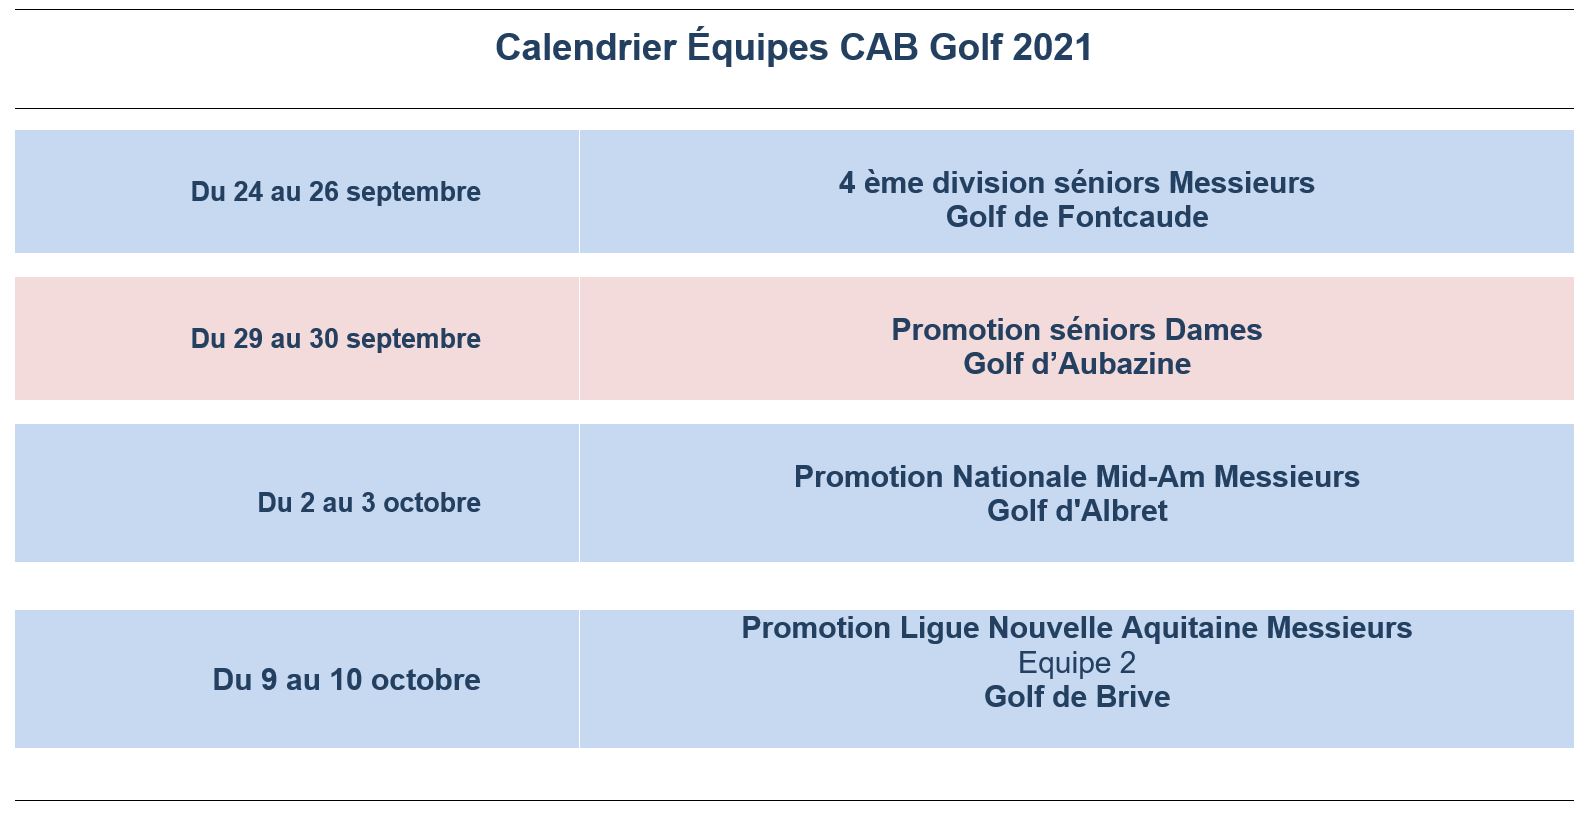 Calendrier equipes CAB Golf 2021 fin de saison. B